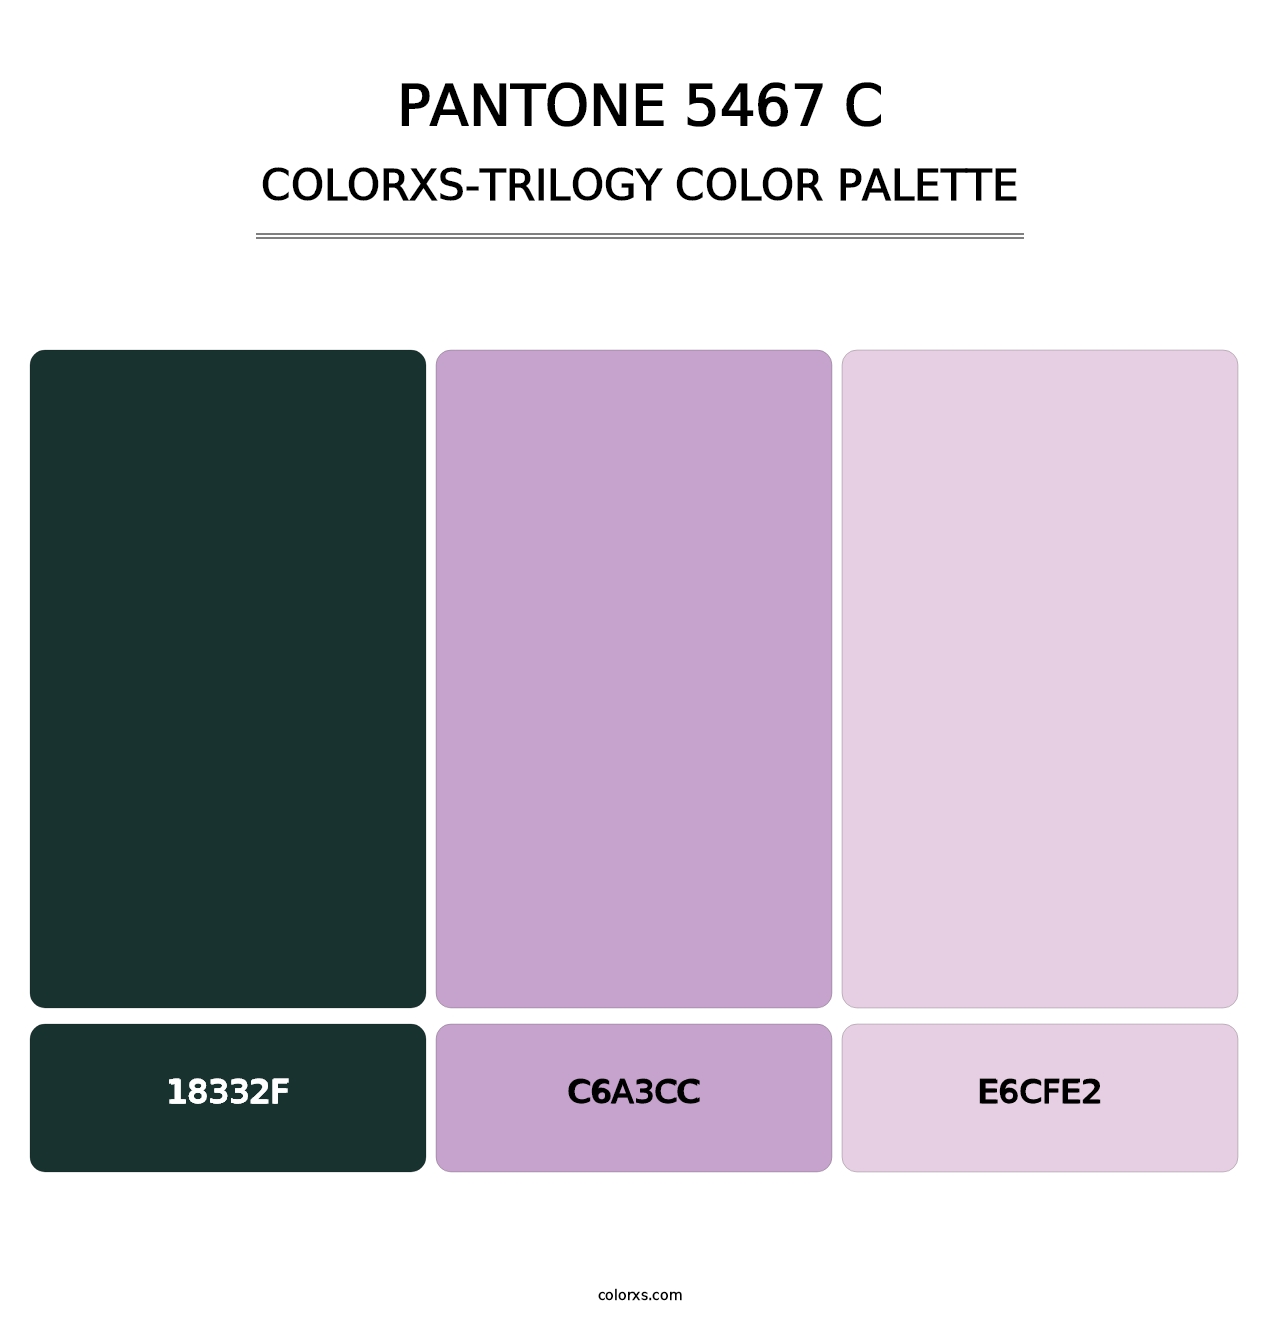 PANTONE 5467 C - Colorxs Trilogy Palette